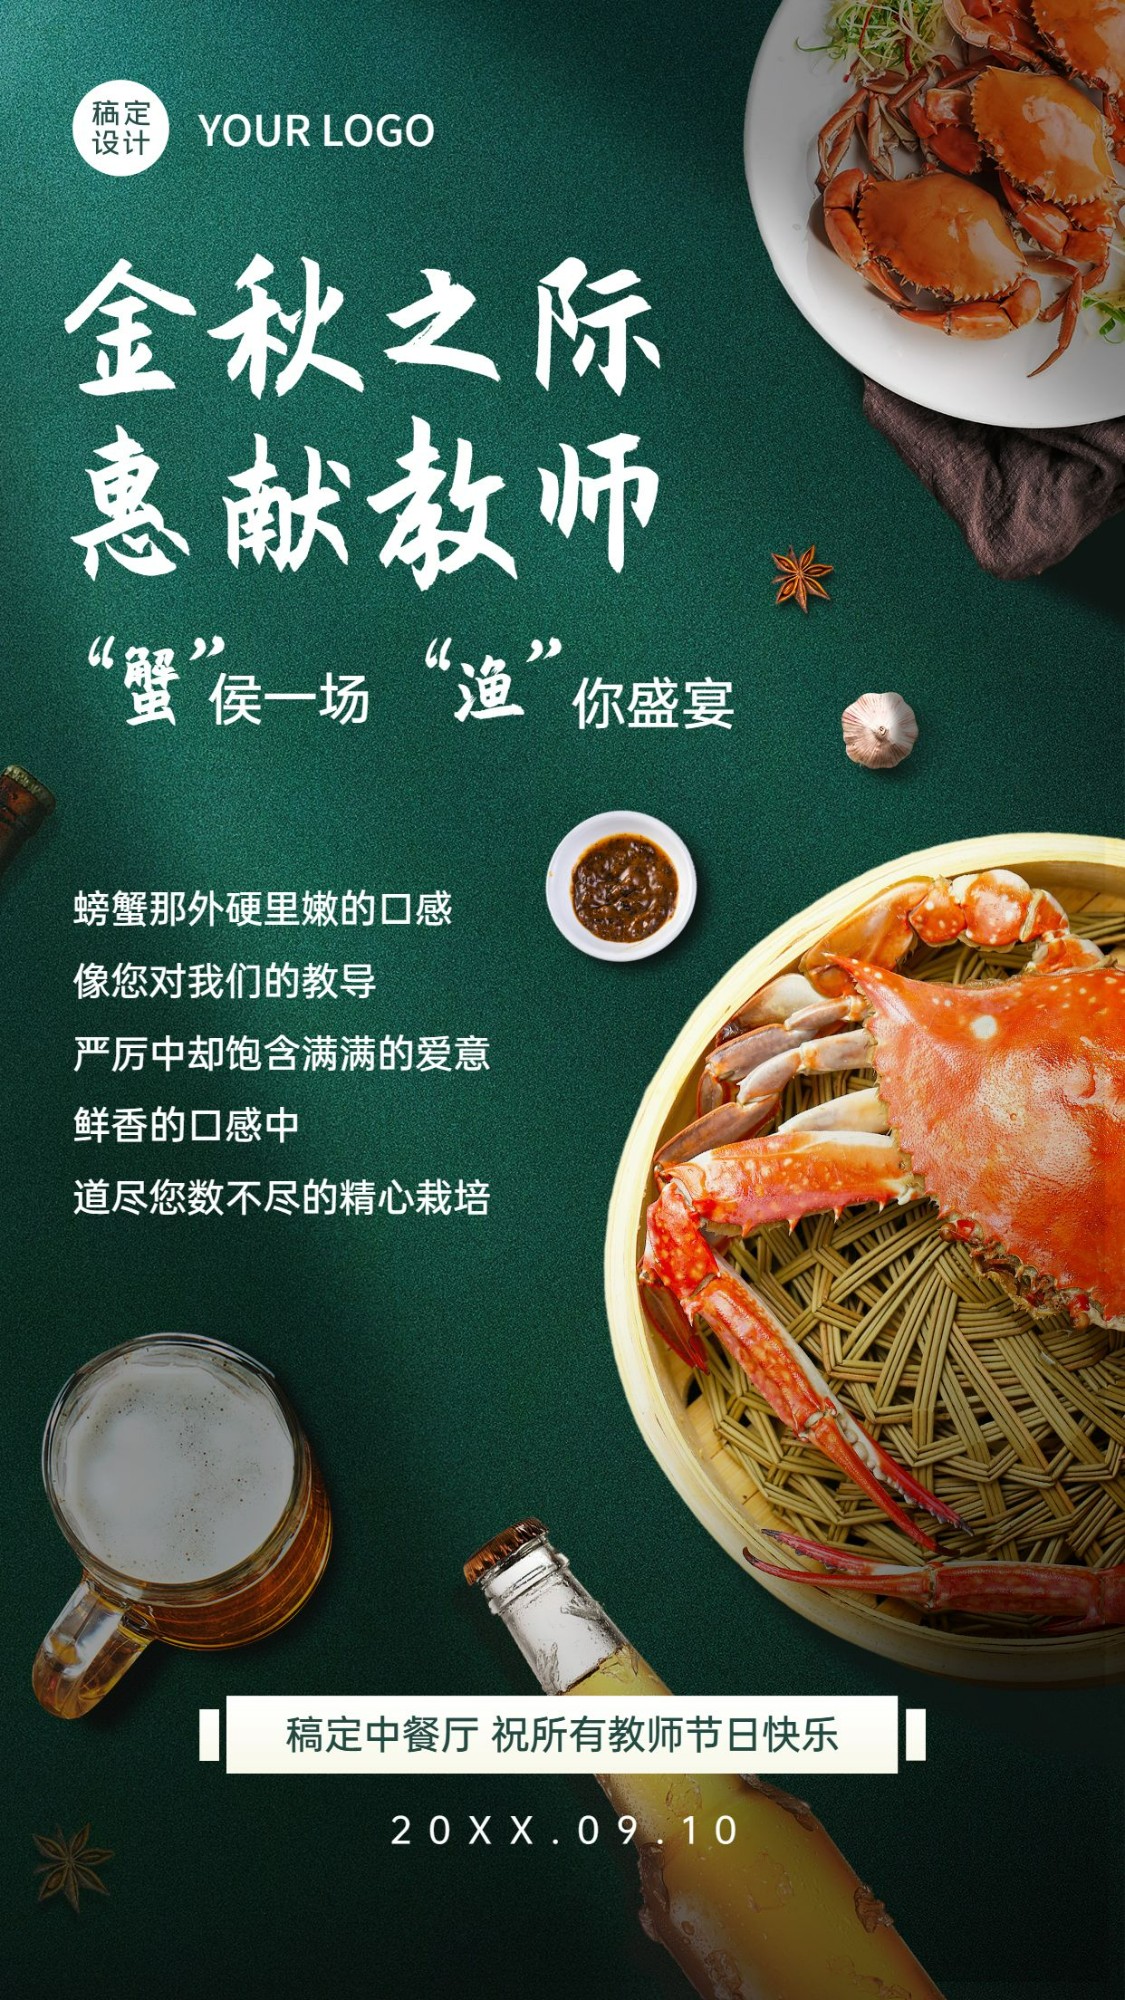 教师节中餐正餐促销活动实景海报预览效果